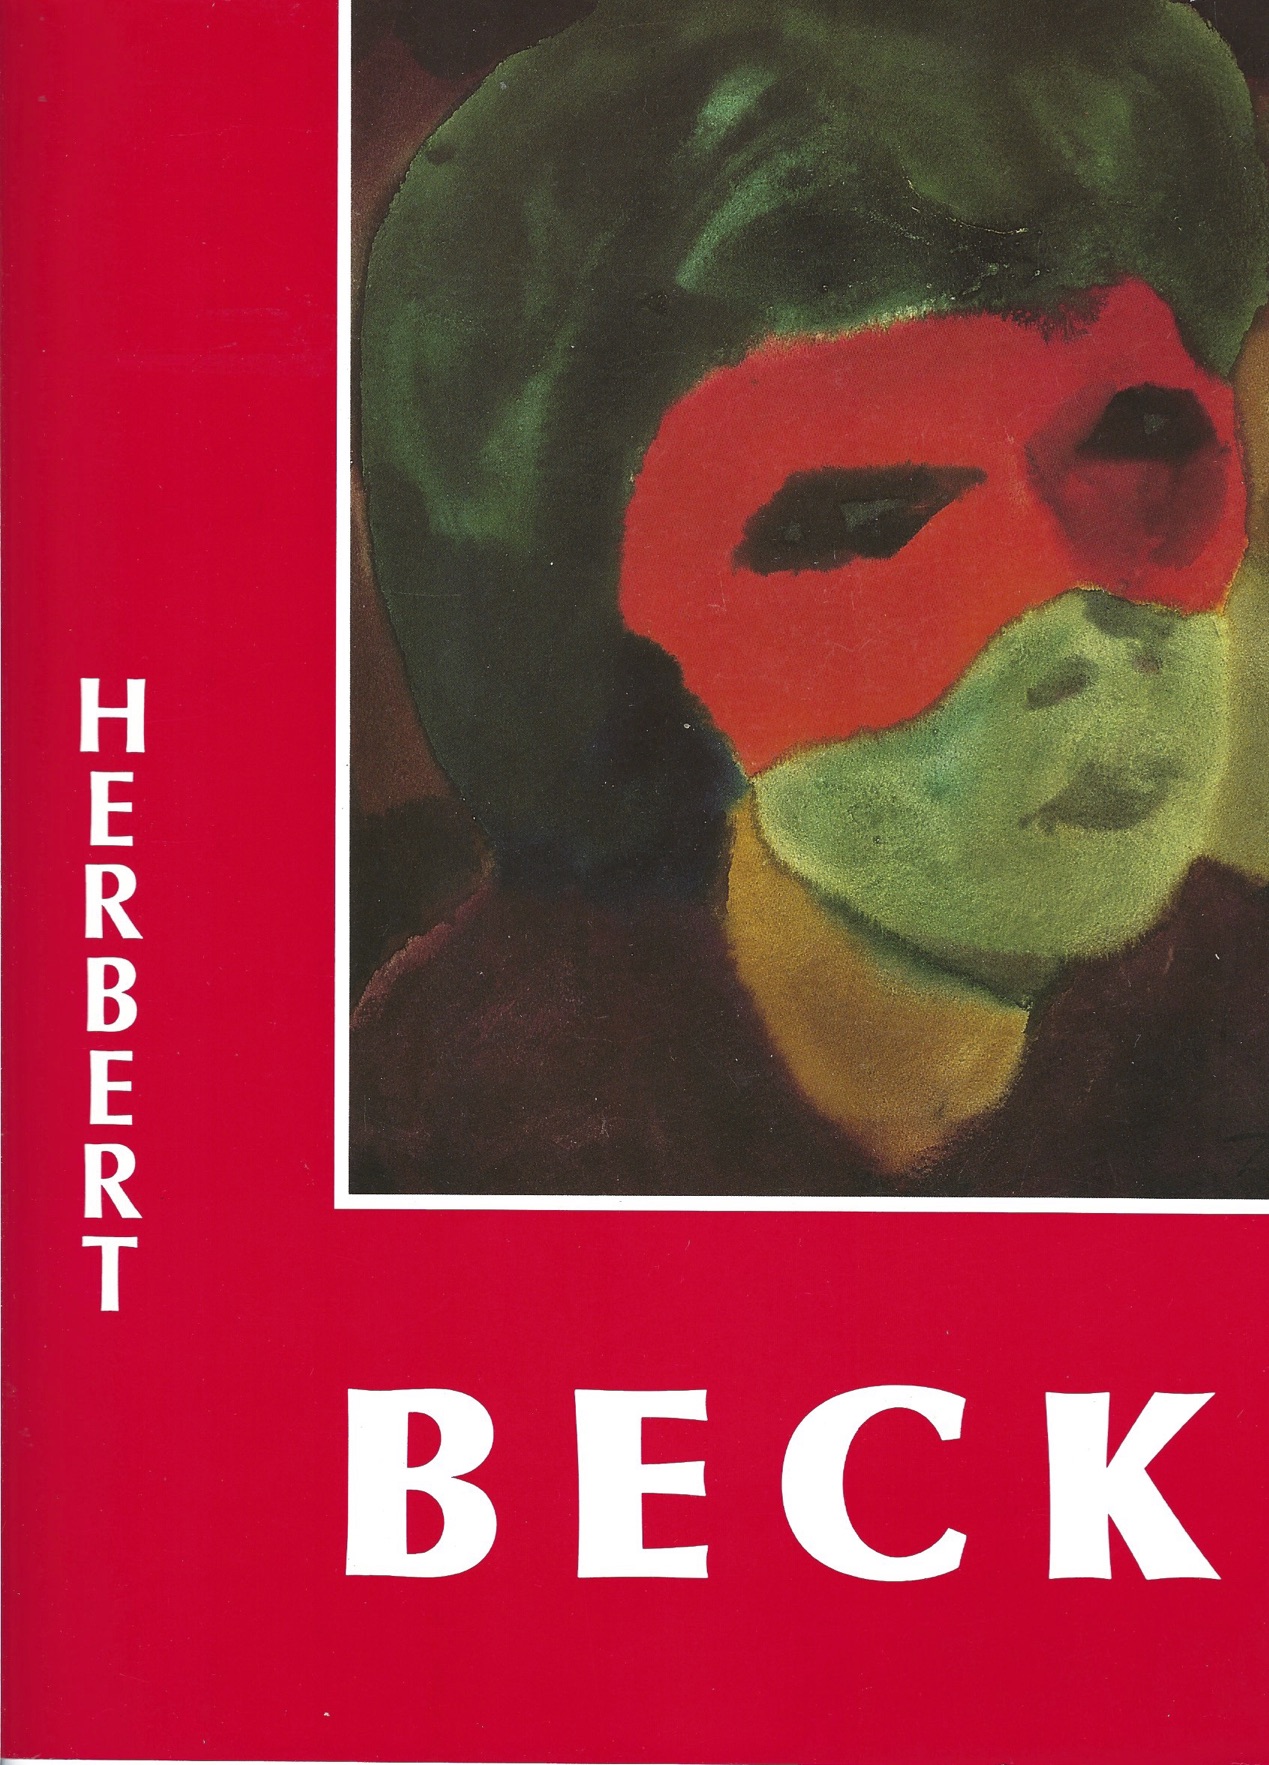 Herbert Beck—Watercolors